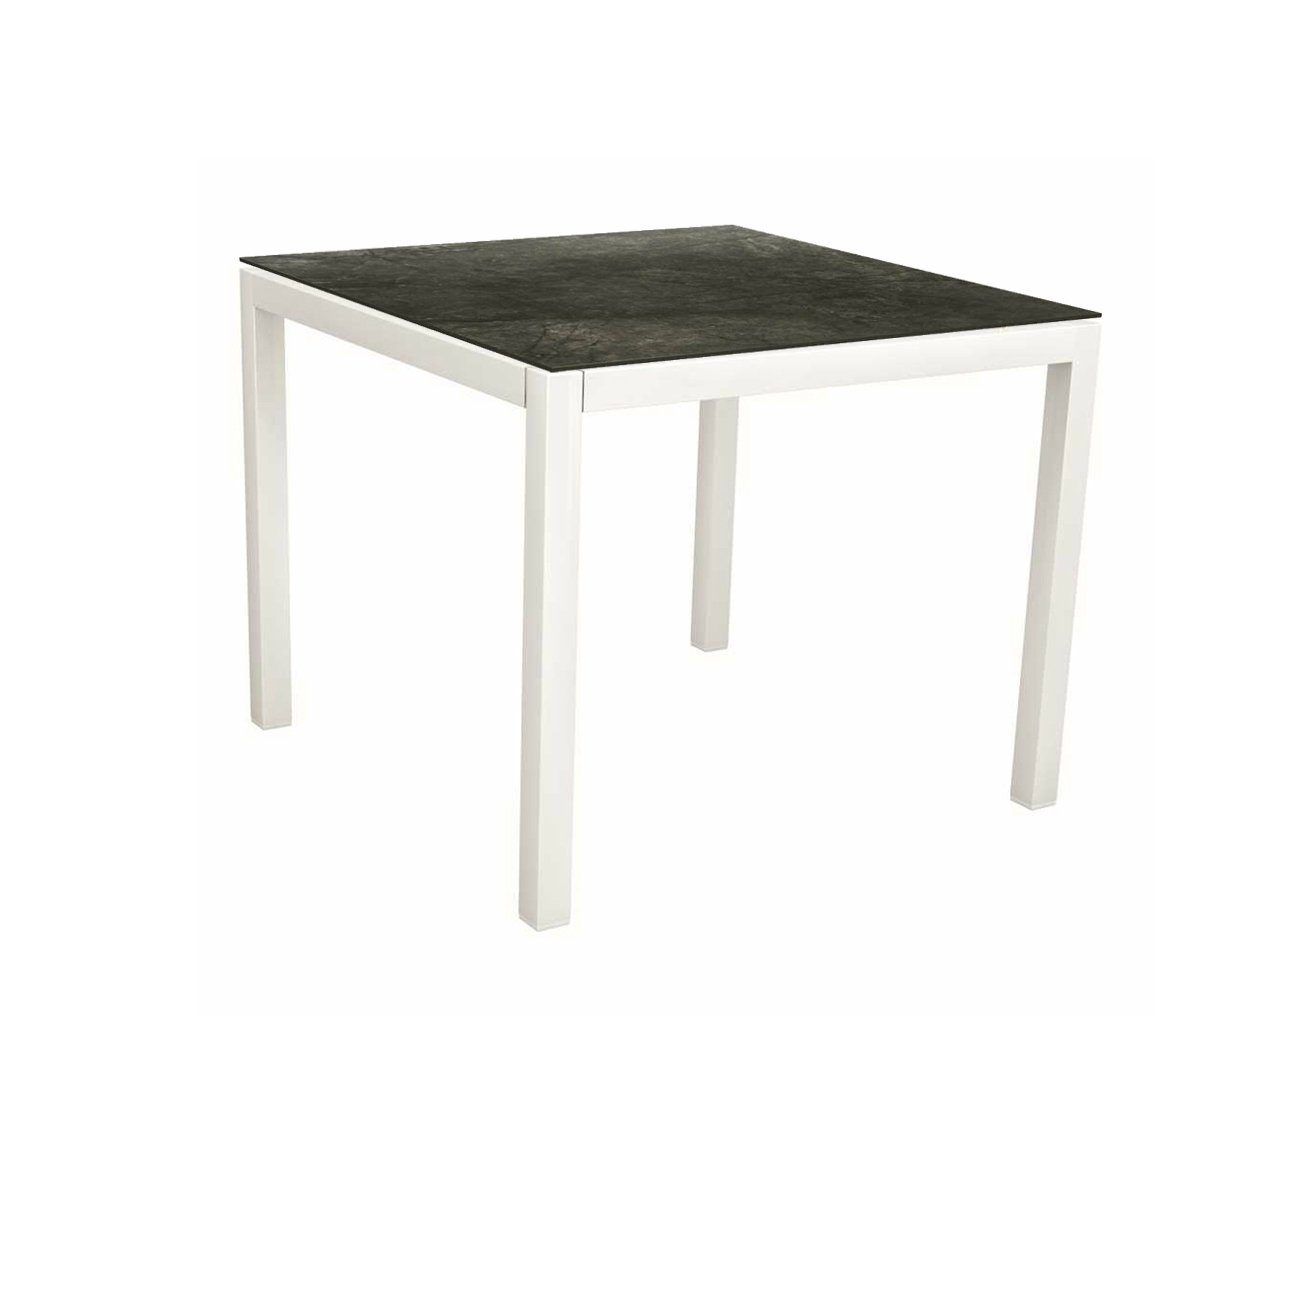 Stern Tischsystem, Gestell Aluminium weiß, Tischplatte HPL Dark Marble, Größe: 90x90 cm